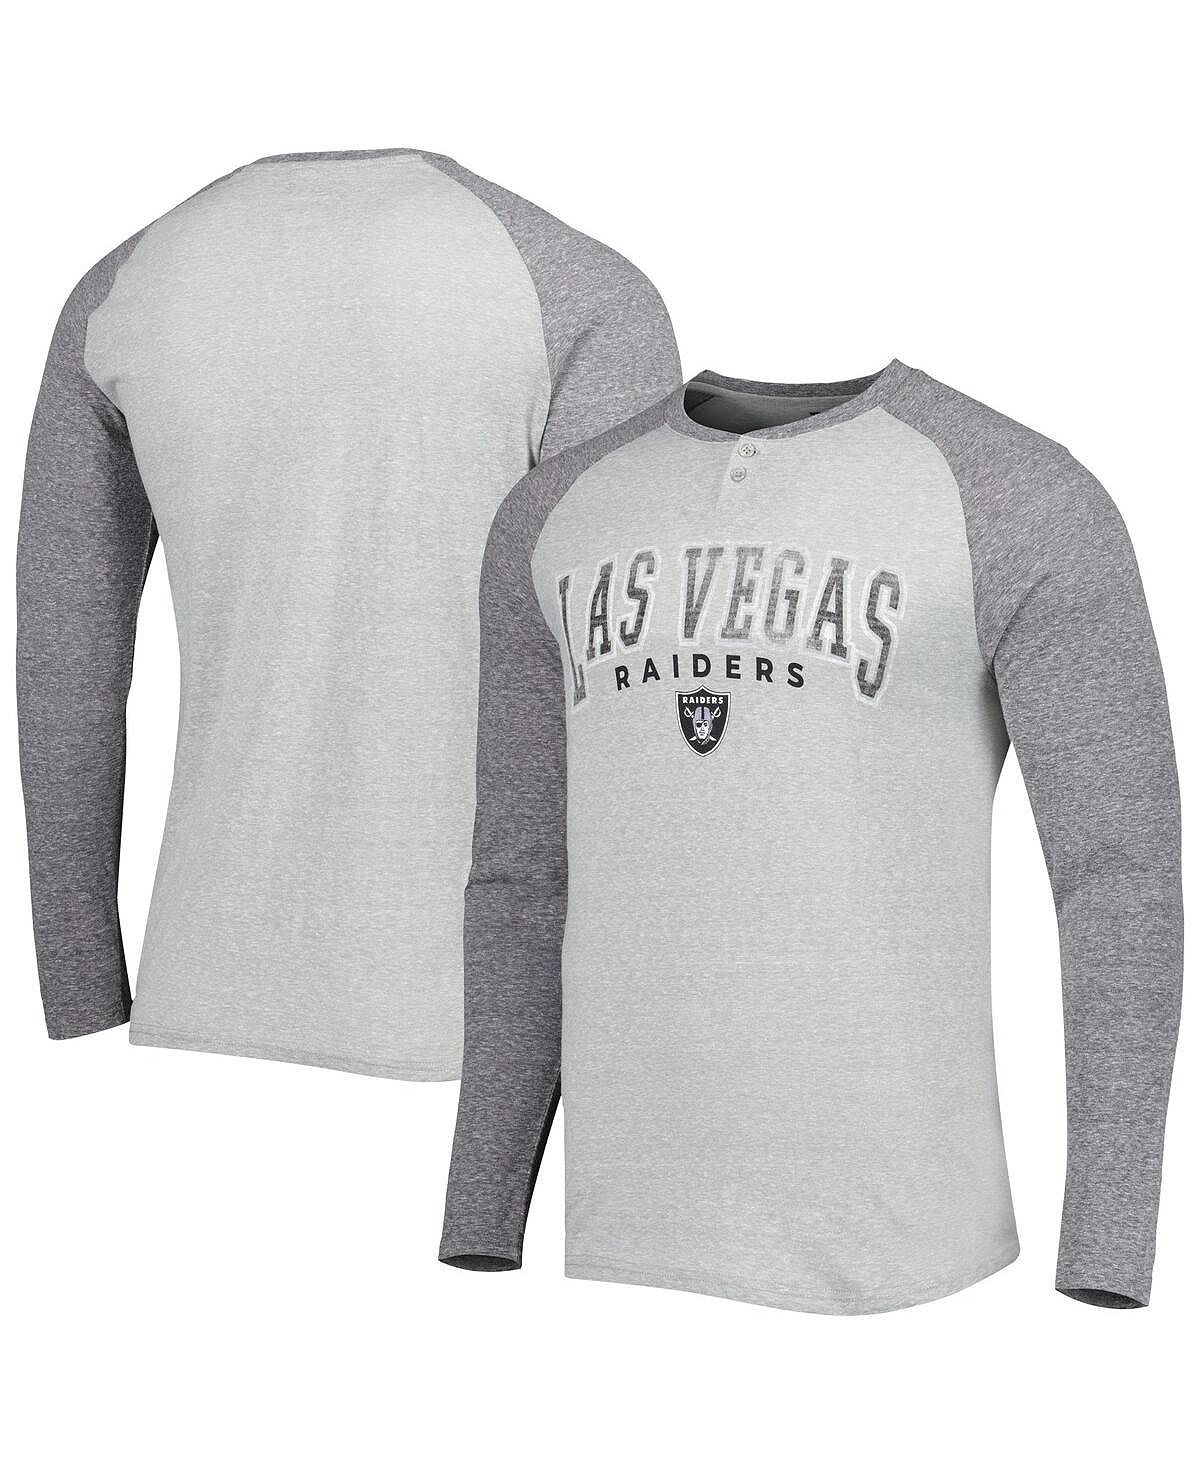 Мужская футболка heather grey las vegas raiders ledger с длинными рукавами и регланами henley Concepts Sport, серый